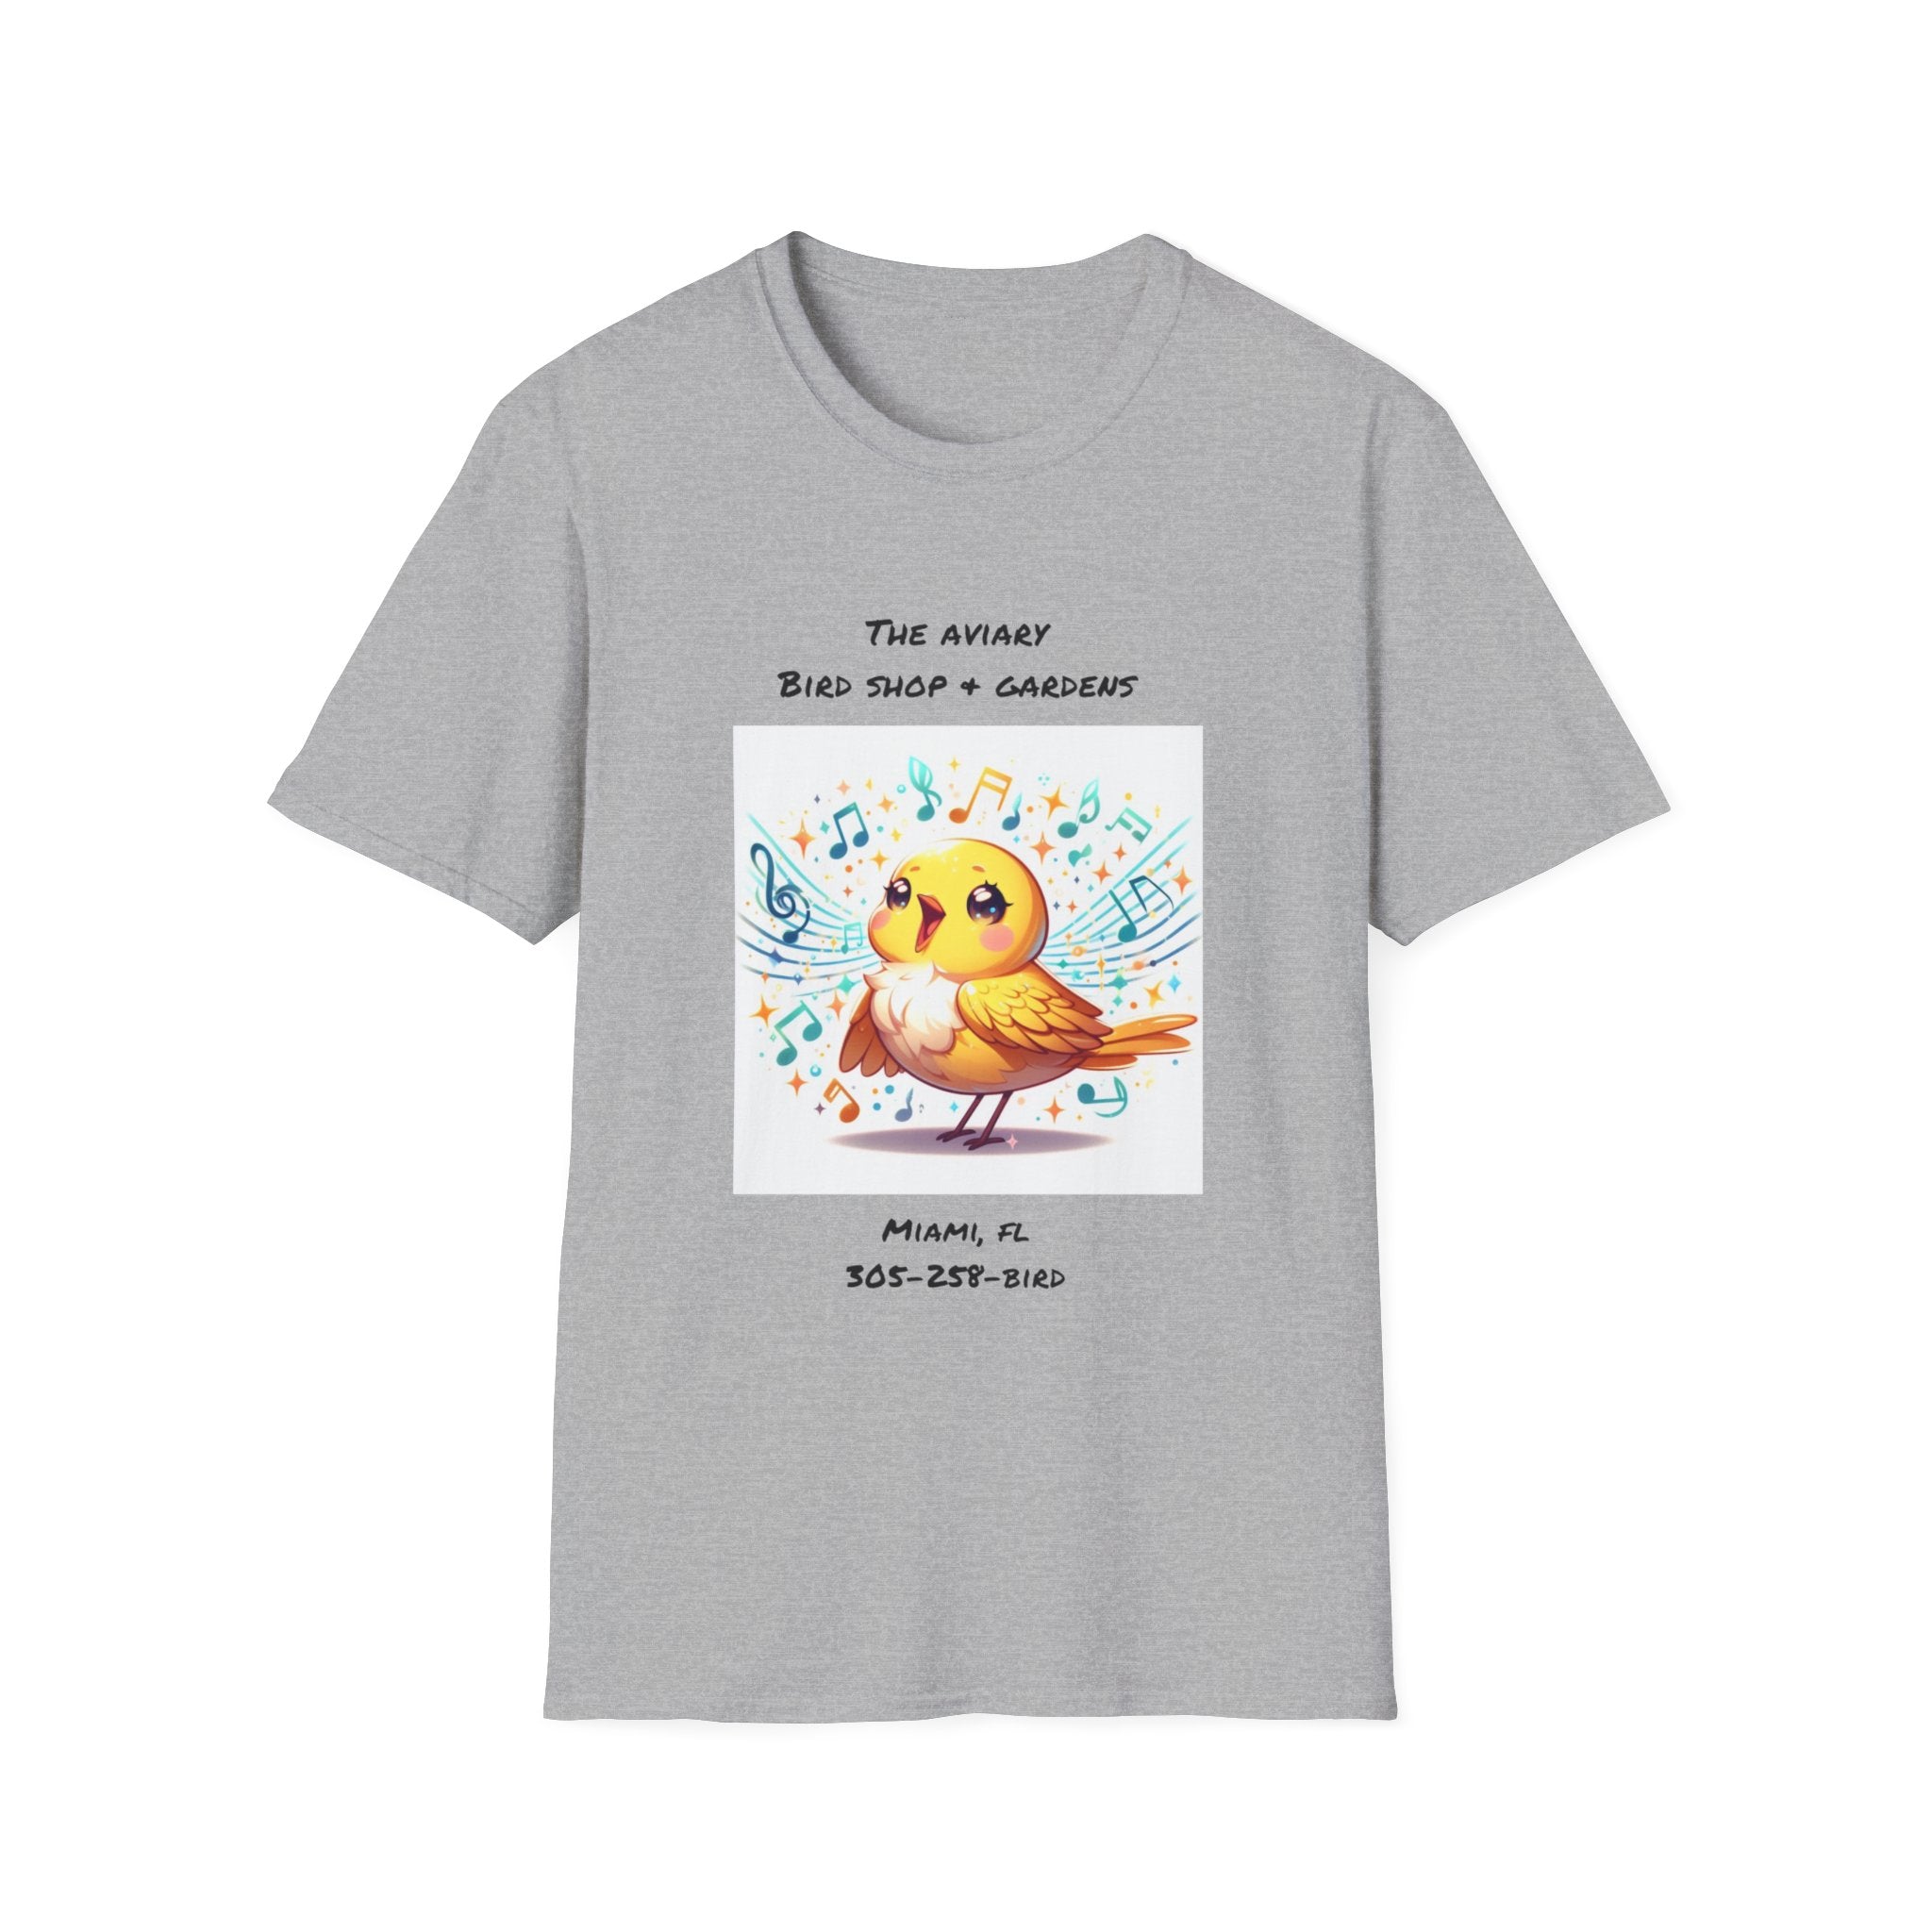 Canary Singing Unisex Softstyle T-Shirt